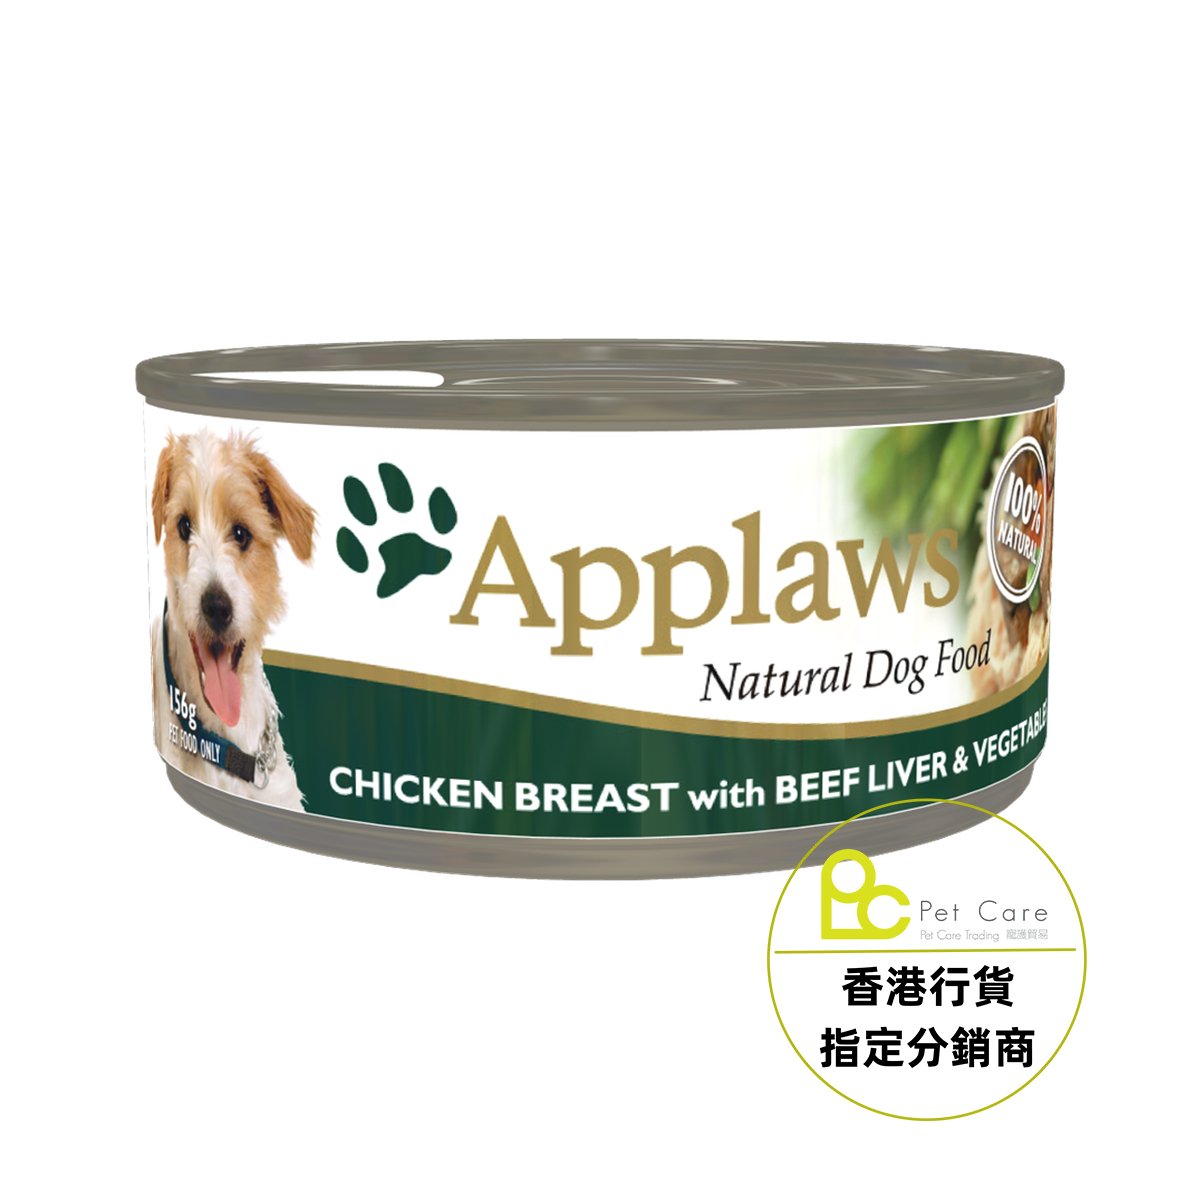 Applaws Dog 全天然 狗罐頭 - 牛肝 雞柳 蔬菜 156g - 幸福站